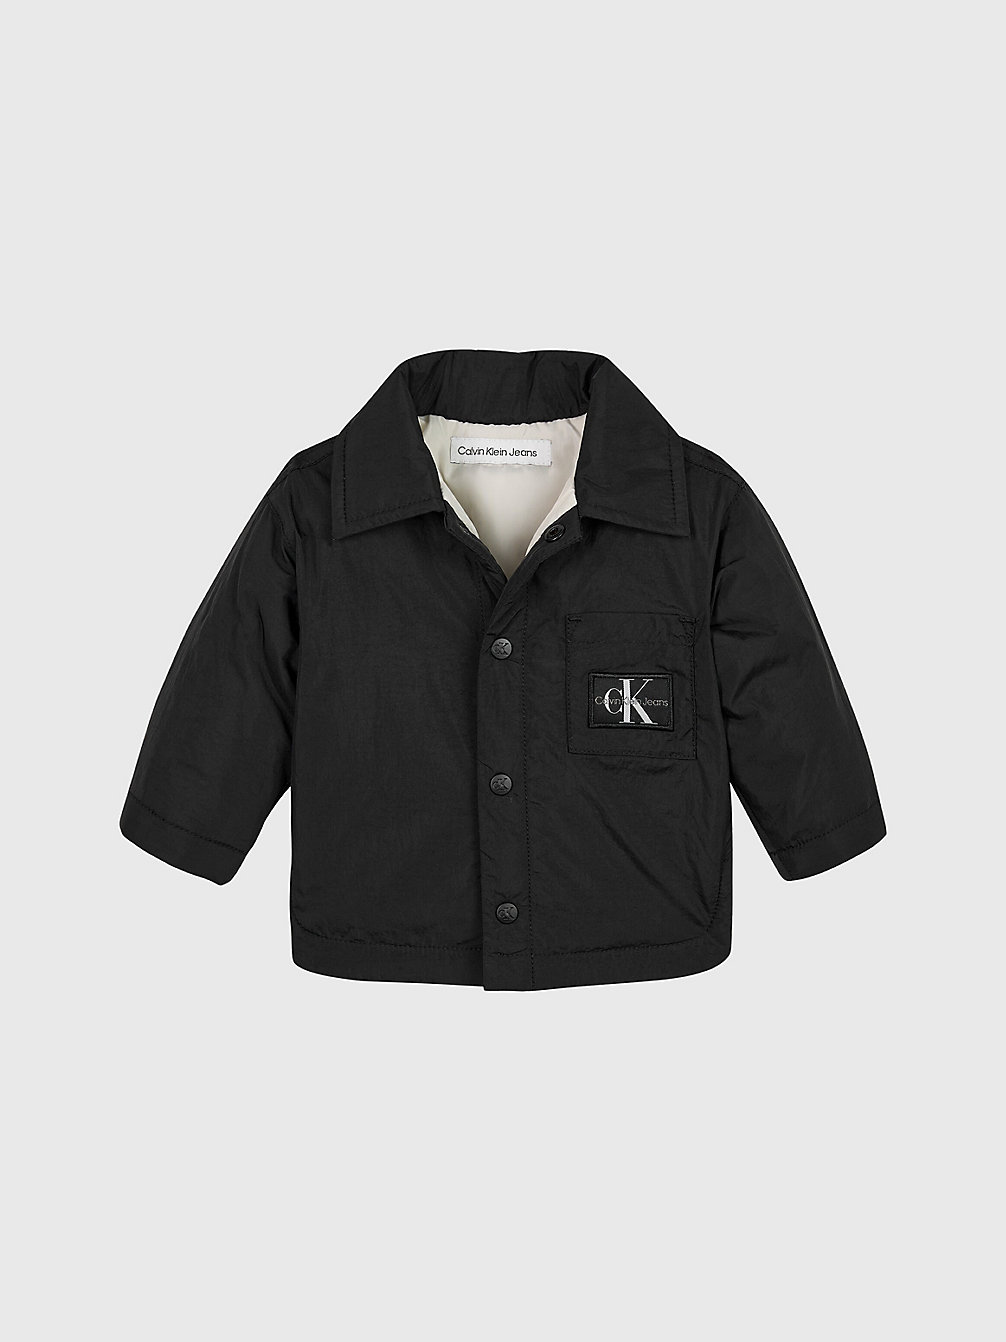 CK BLACK Newborn Padded Coach Jacket undefined newborn Calvin Klein